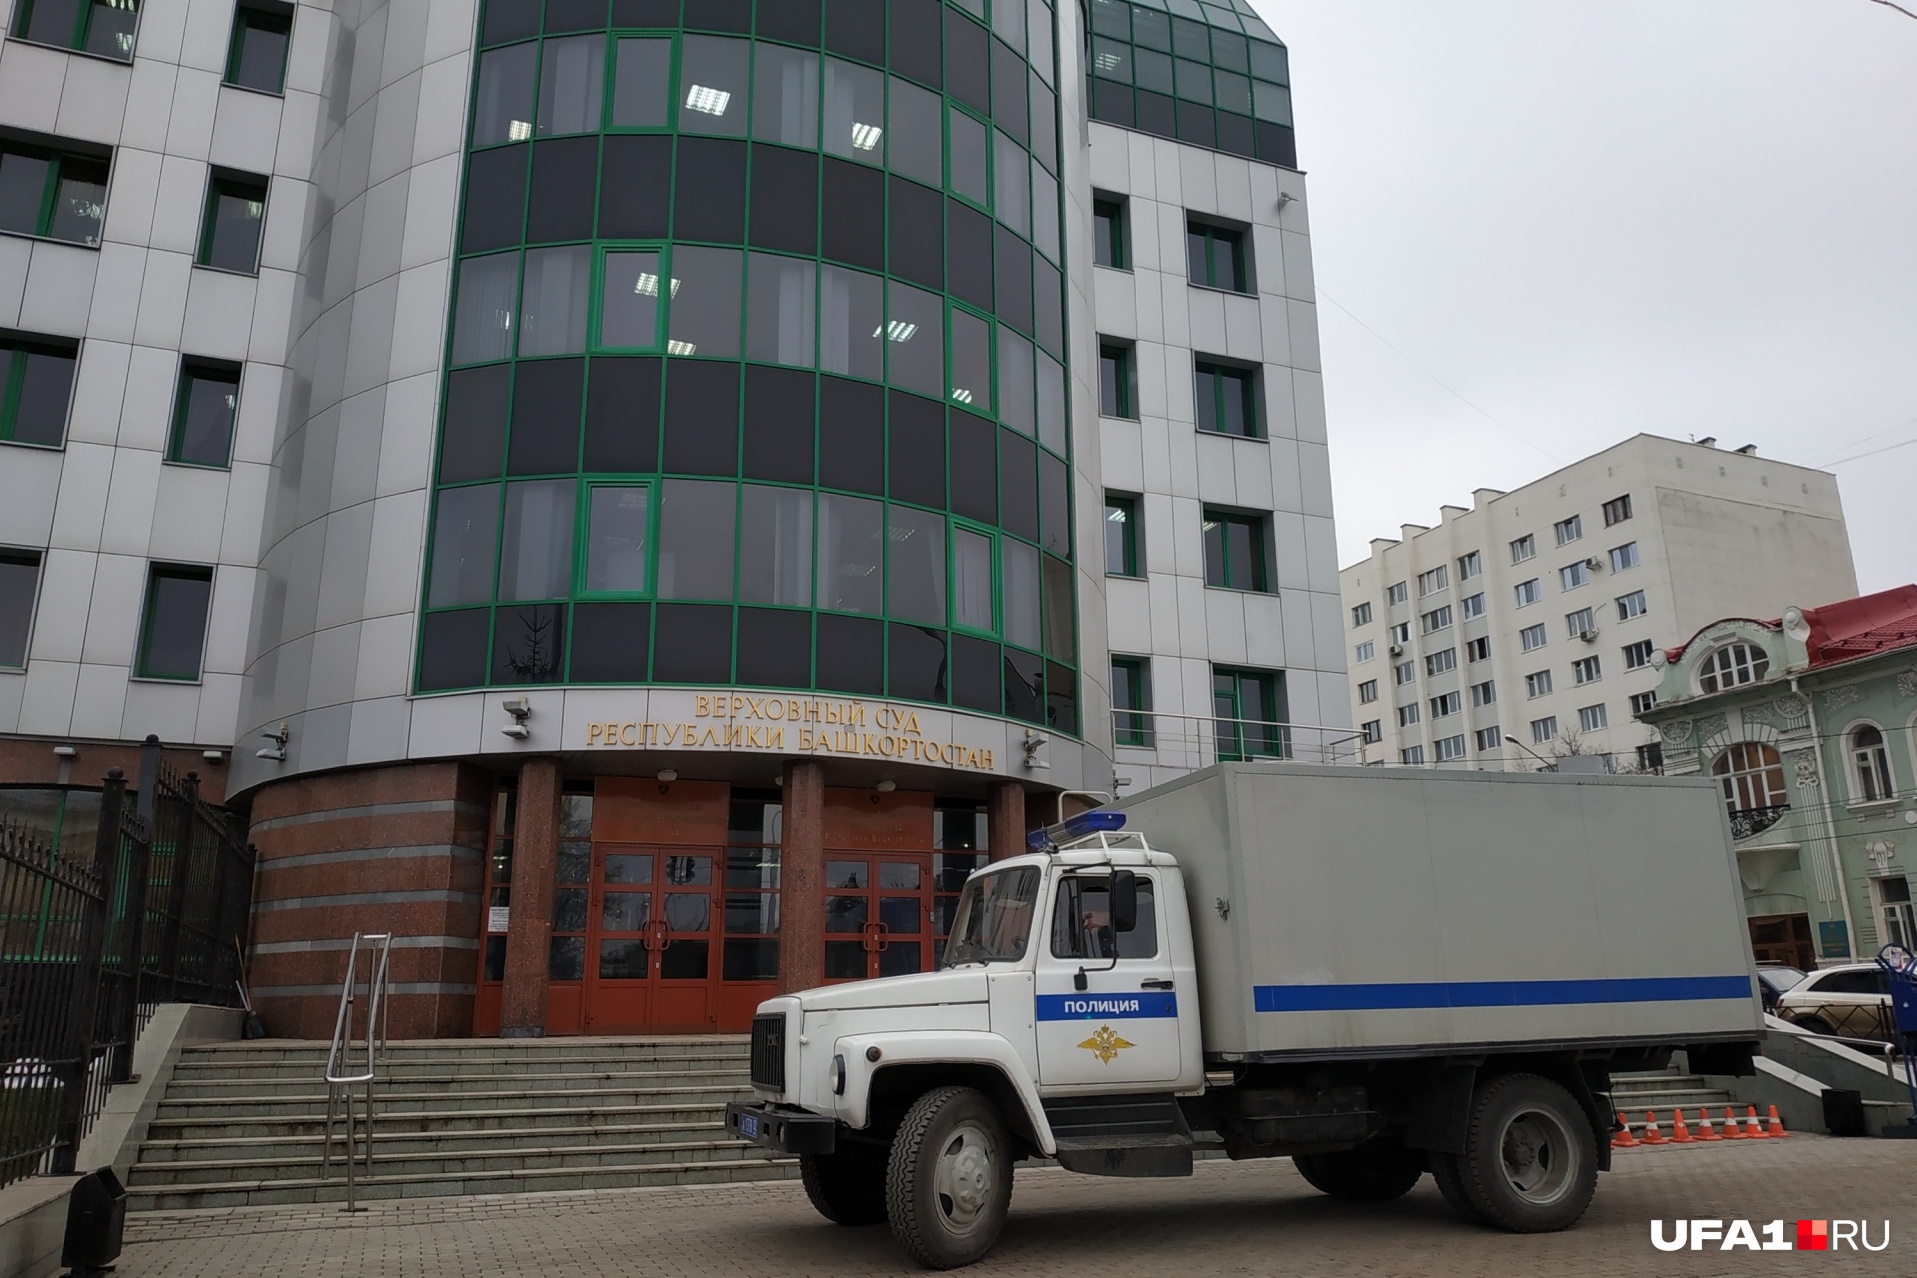 Суды в Башкирии будут проходить в закрытом режиме